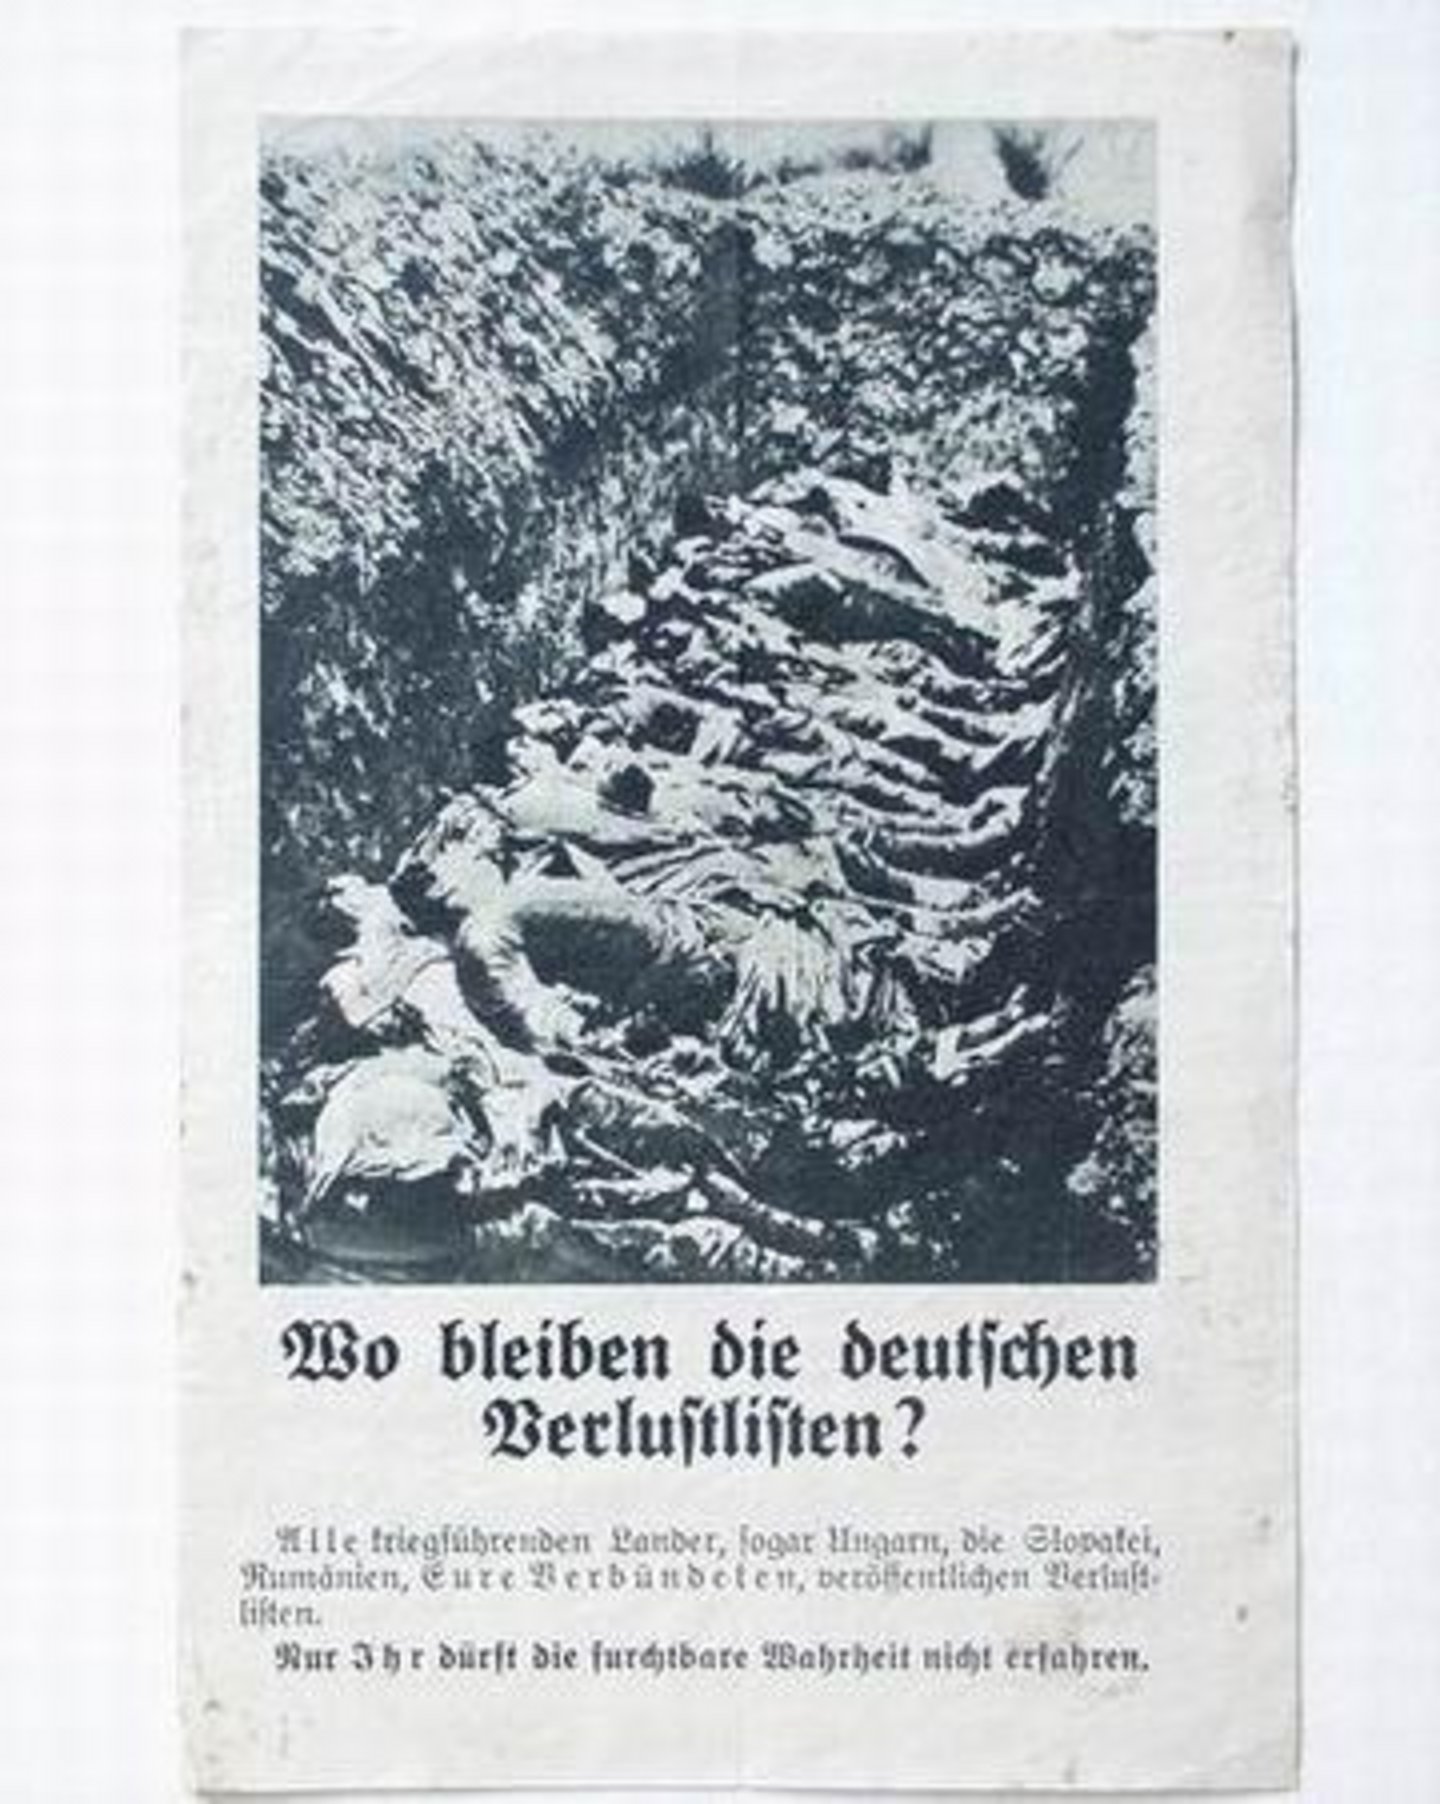 Kommunalarchive zeigen immer wieder eine erstaunliche Varianz an Quellen. Das mit Vorder- und Rückseite abgebildete Flugblatt hatten alliierte Flugzeuge im Oktober 1941 über einem deutschen Dorf abgeworfen.